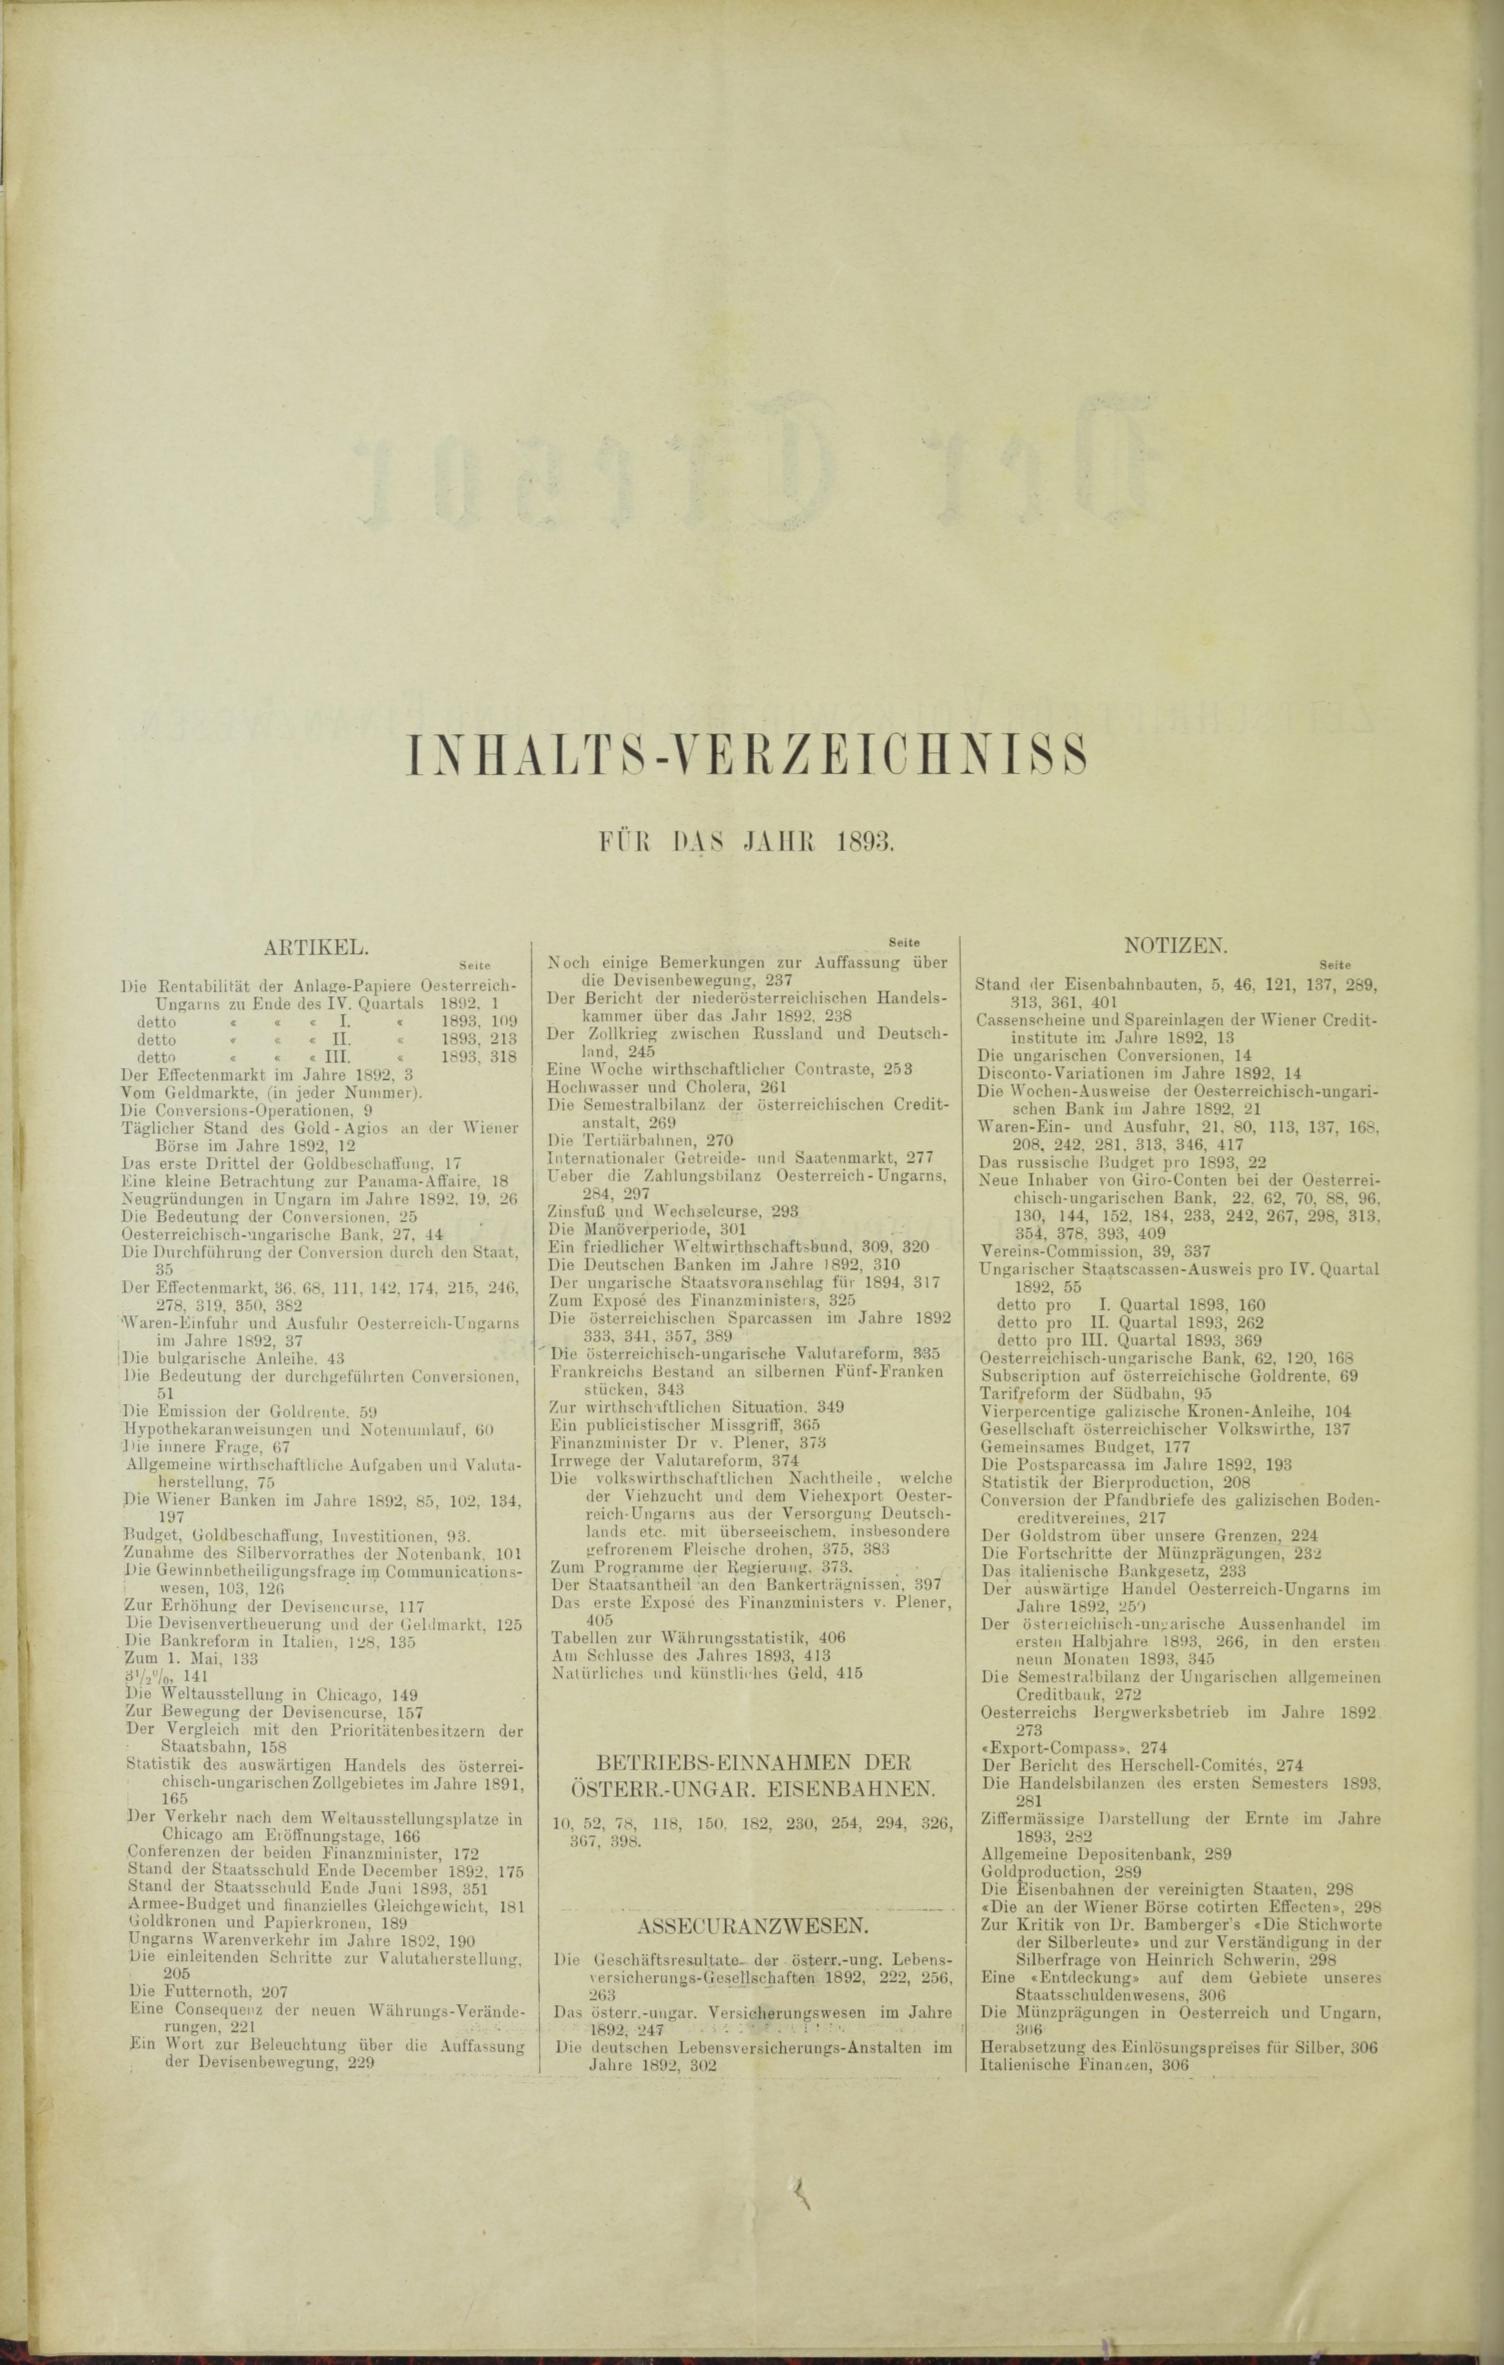 Der Tresor 01.06.1893 - Seite 10